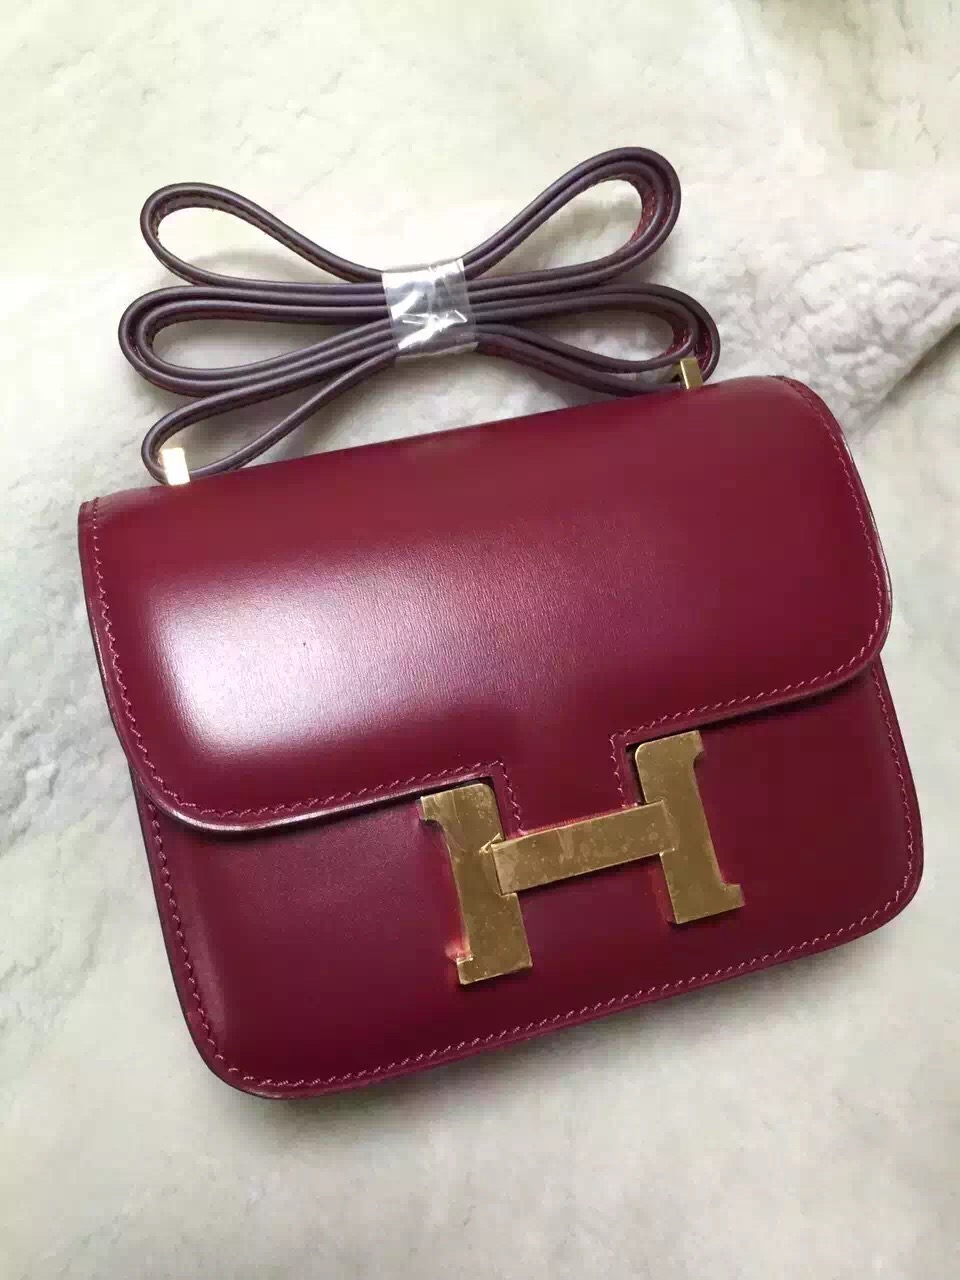 Hermes original box leather constance bag C023 bordeaux